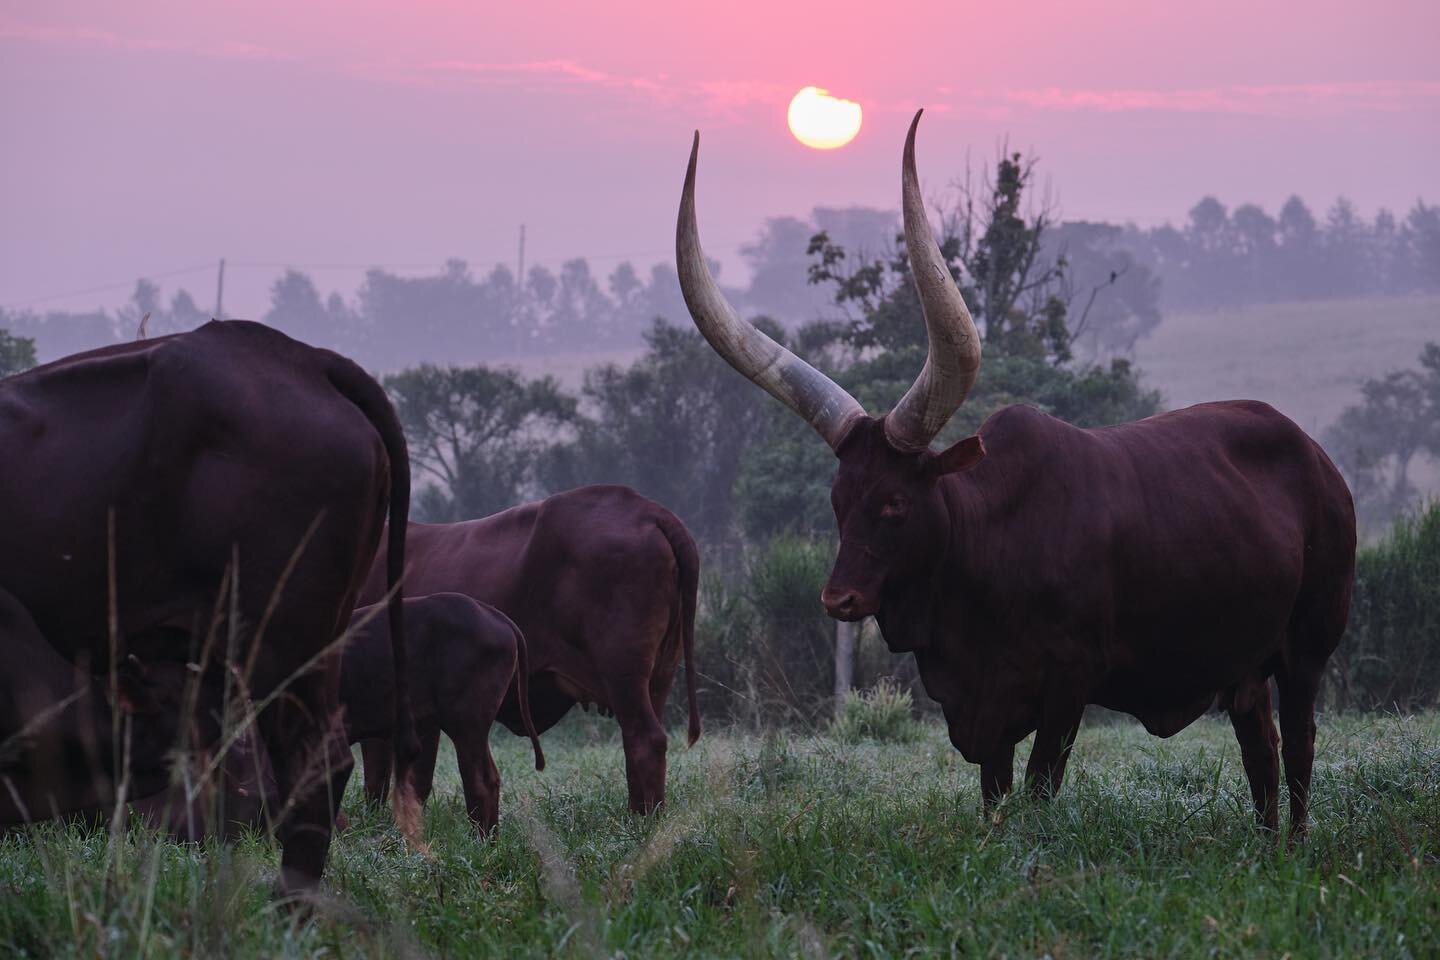 Ankole cattle at Emburara, shot for @uganda_tourism a couple of years ago. 

@ugwildlife @exploreuganda @visitugandauk @emburarafarmlodge #uganda #travelphotography #travelphoto #africa #sunrise #uganda #farming #cattle #longhorn #ankole